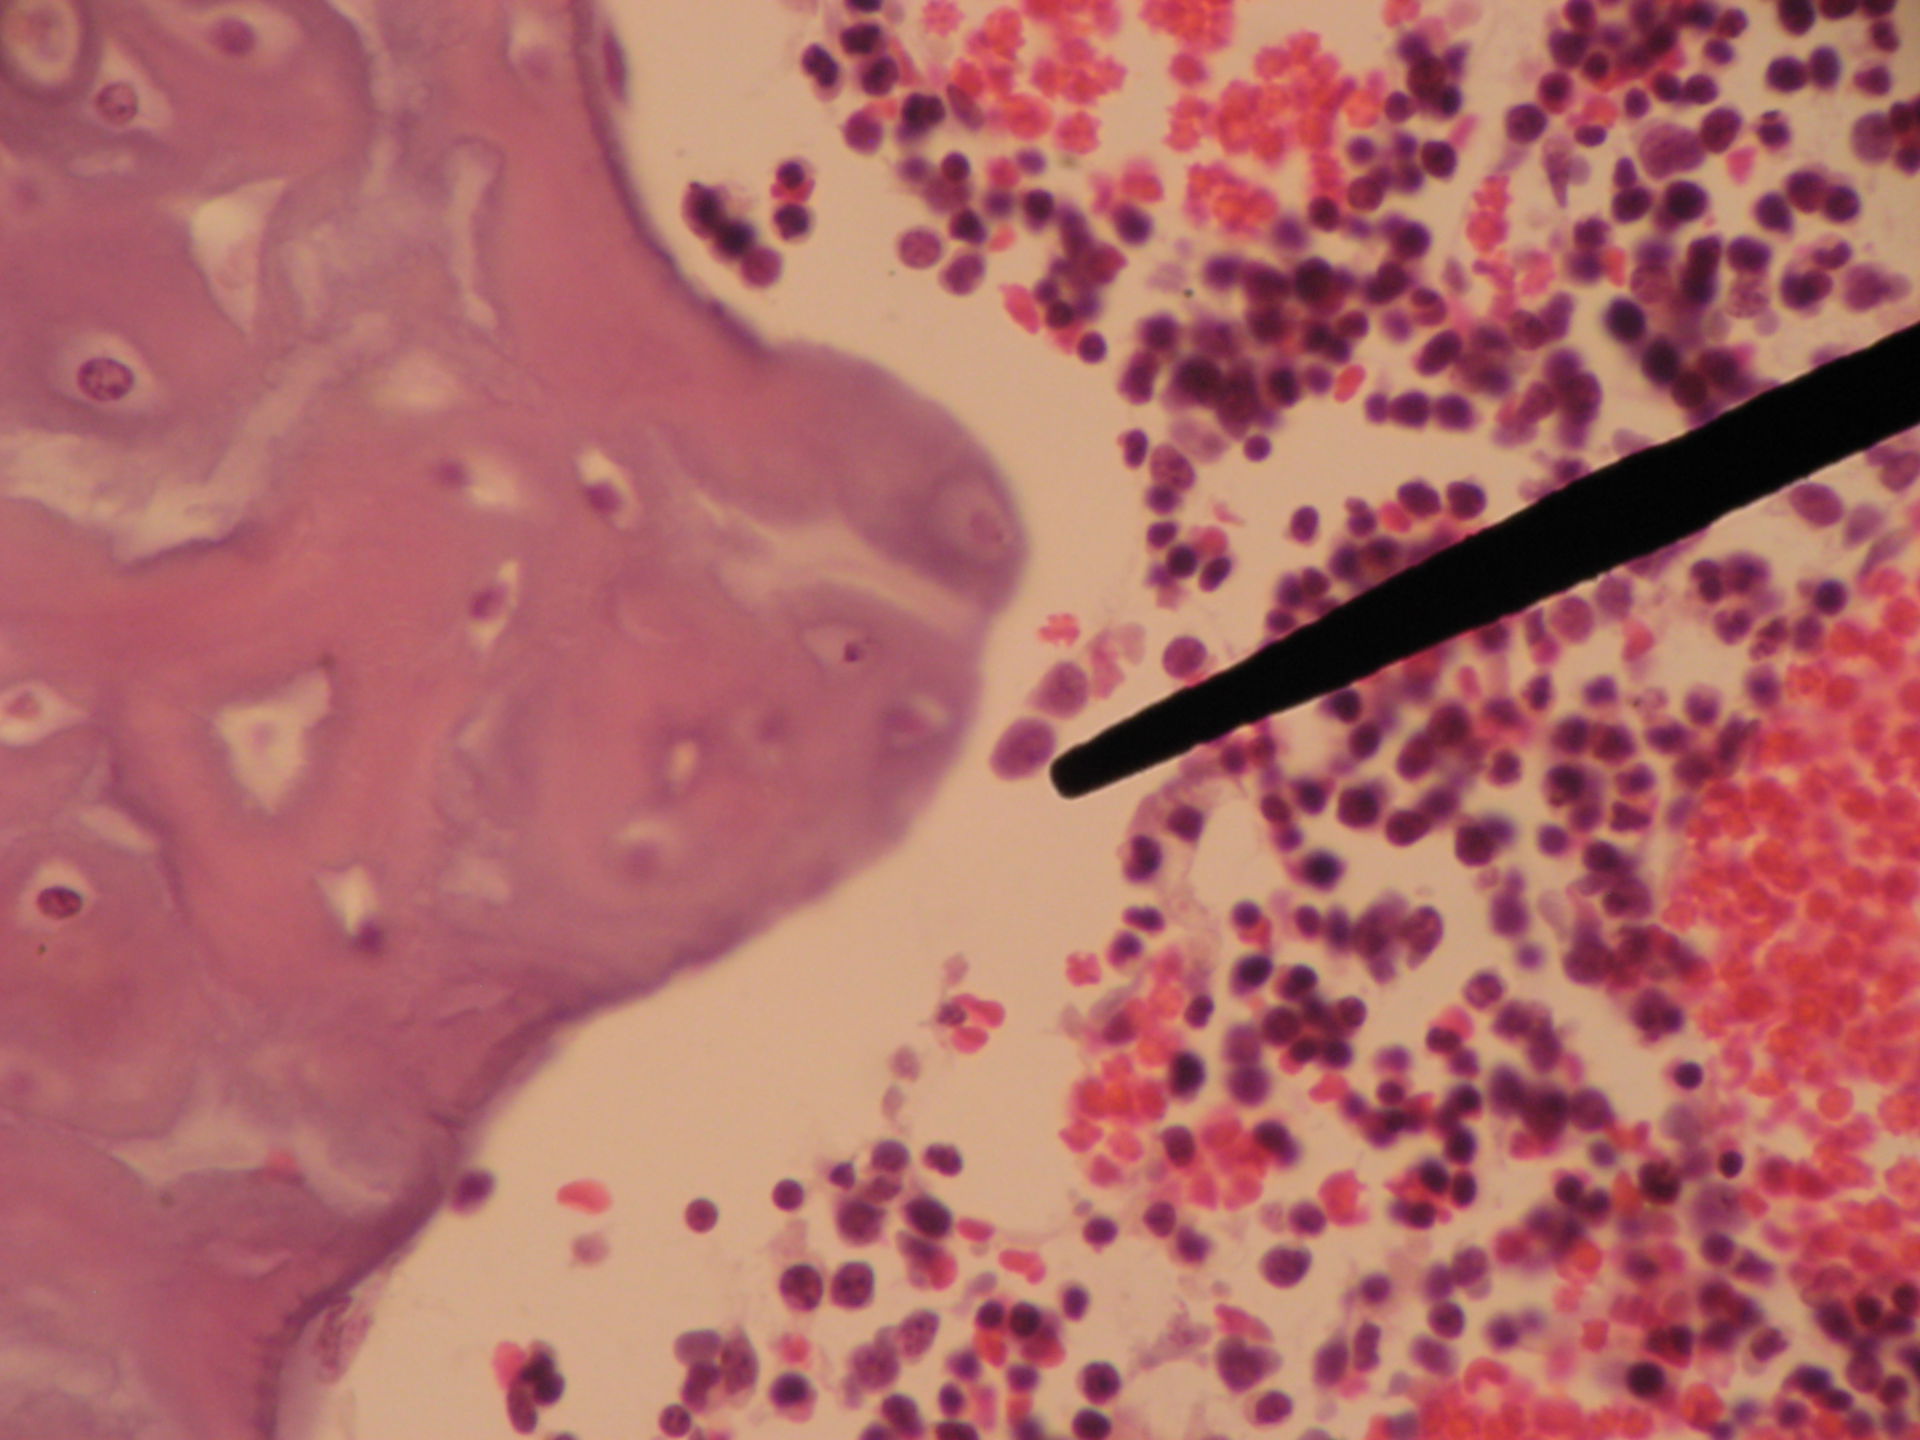 Rotes Knochenmark eines Schweinefetus (3) - Plasmazelle